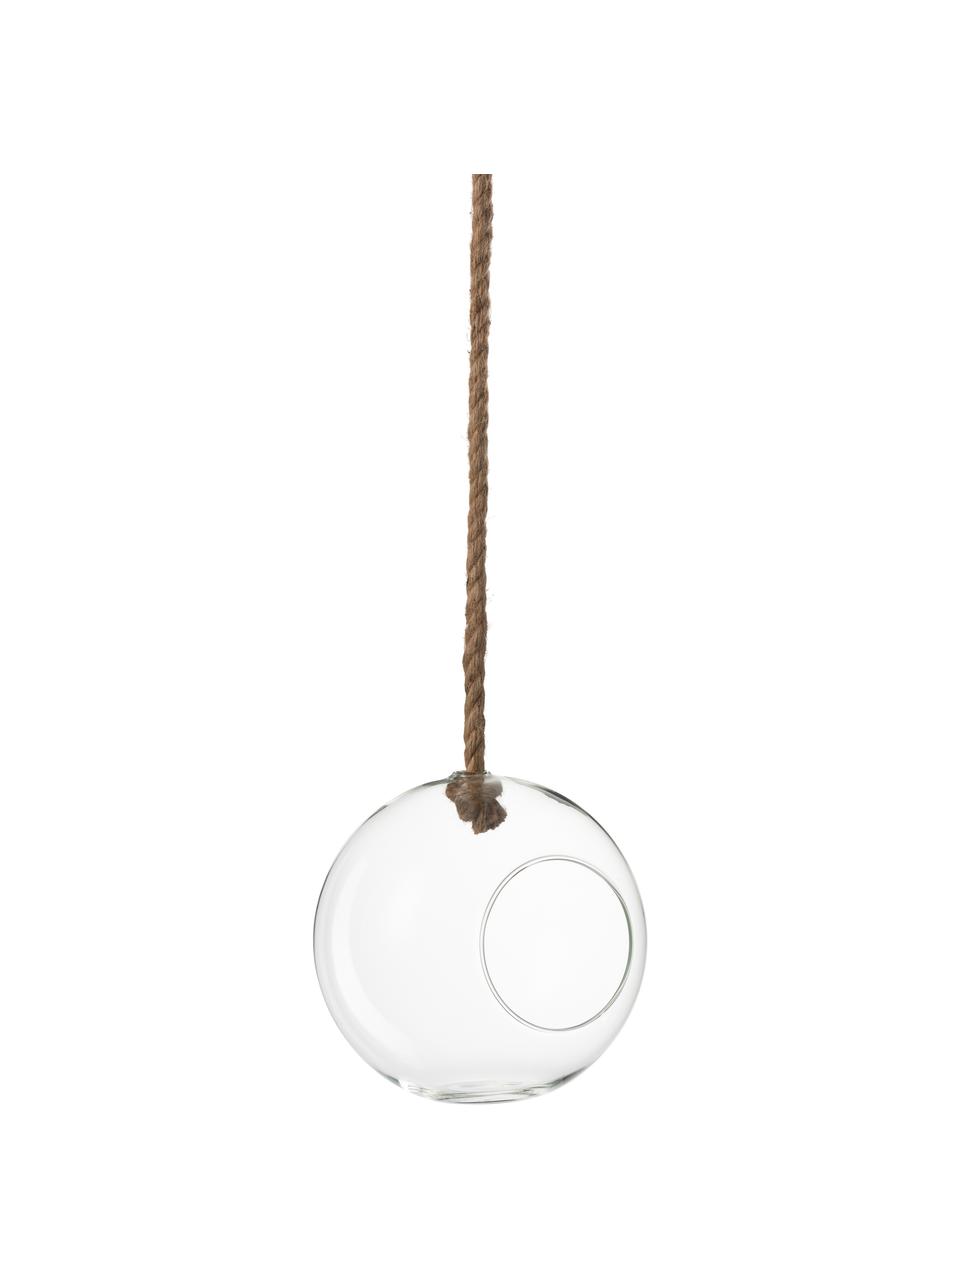 Maceta colgante Ball, Transparente, Ø 22 x Al 22 cm